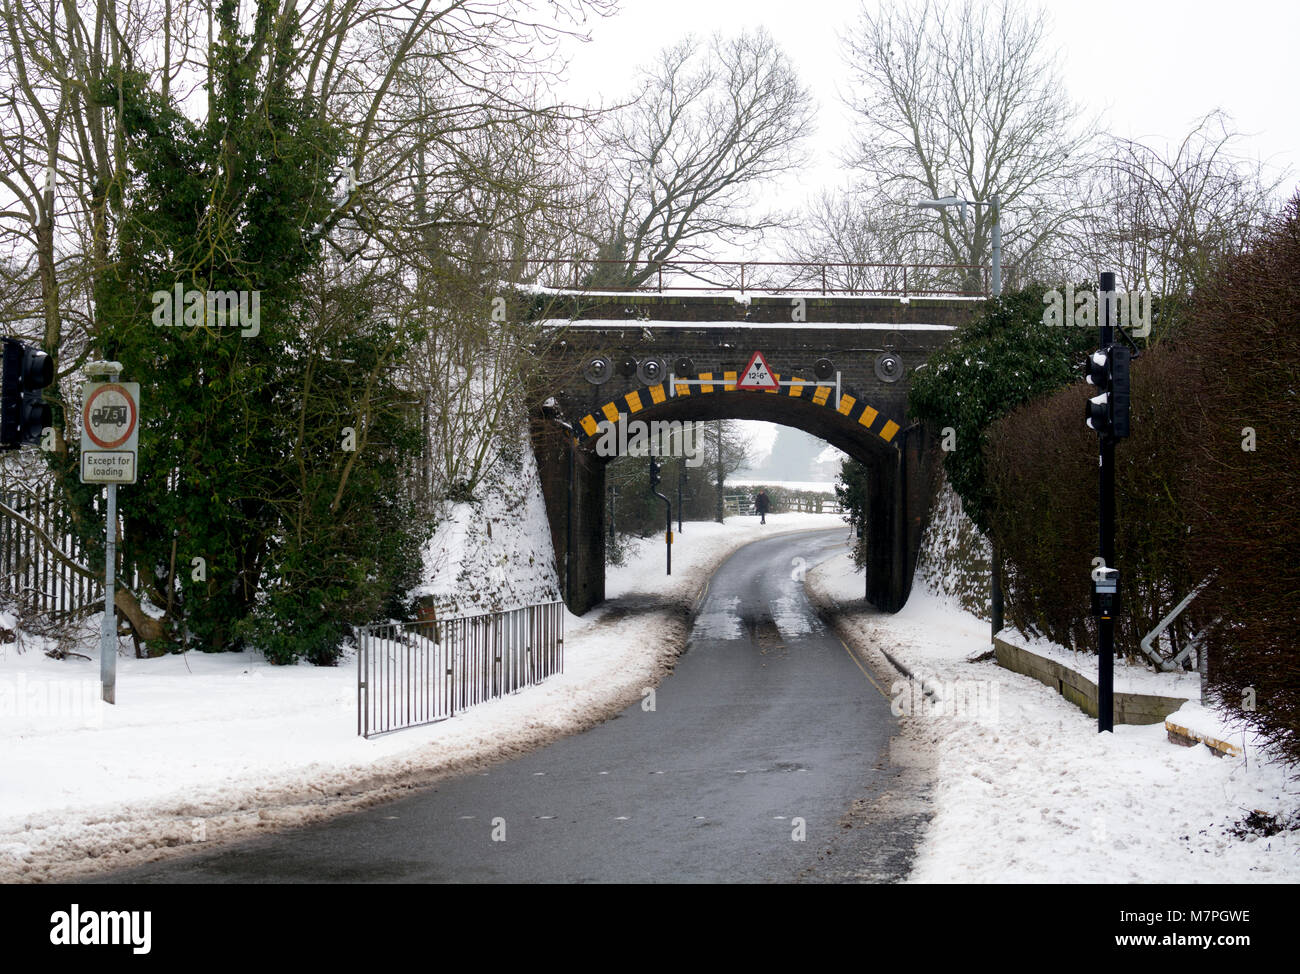 Un pont avec les restrictions de hauteur sur une route de campagne en hiver, Warwick, Royaume-Uni Banque D'Images